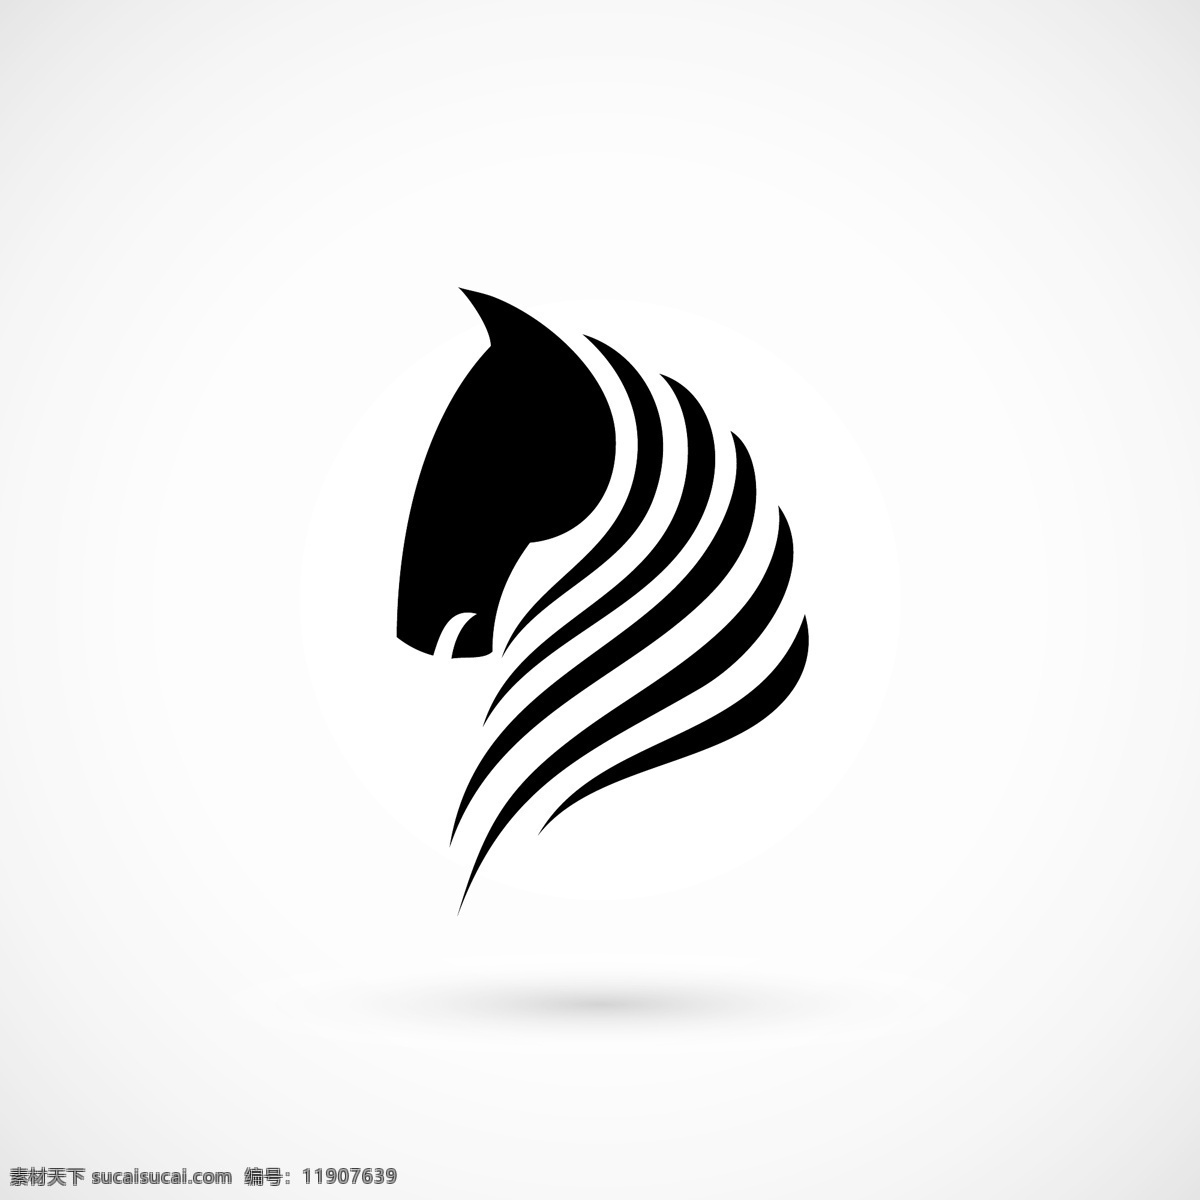 个性 马 标志设计 企业标志 矢量标志 标志 马标志 矢量马 马素材 马年 2014年 手绘 插画 墨迹笔触 文化艺术 矢量素材 白色